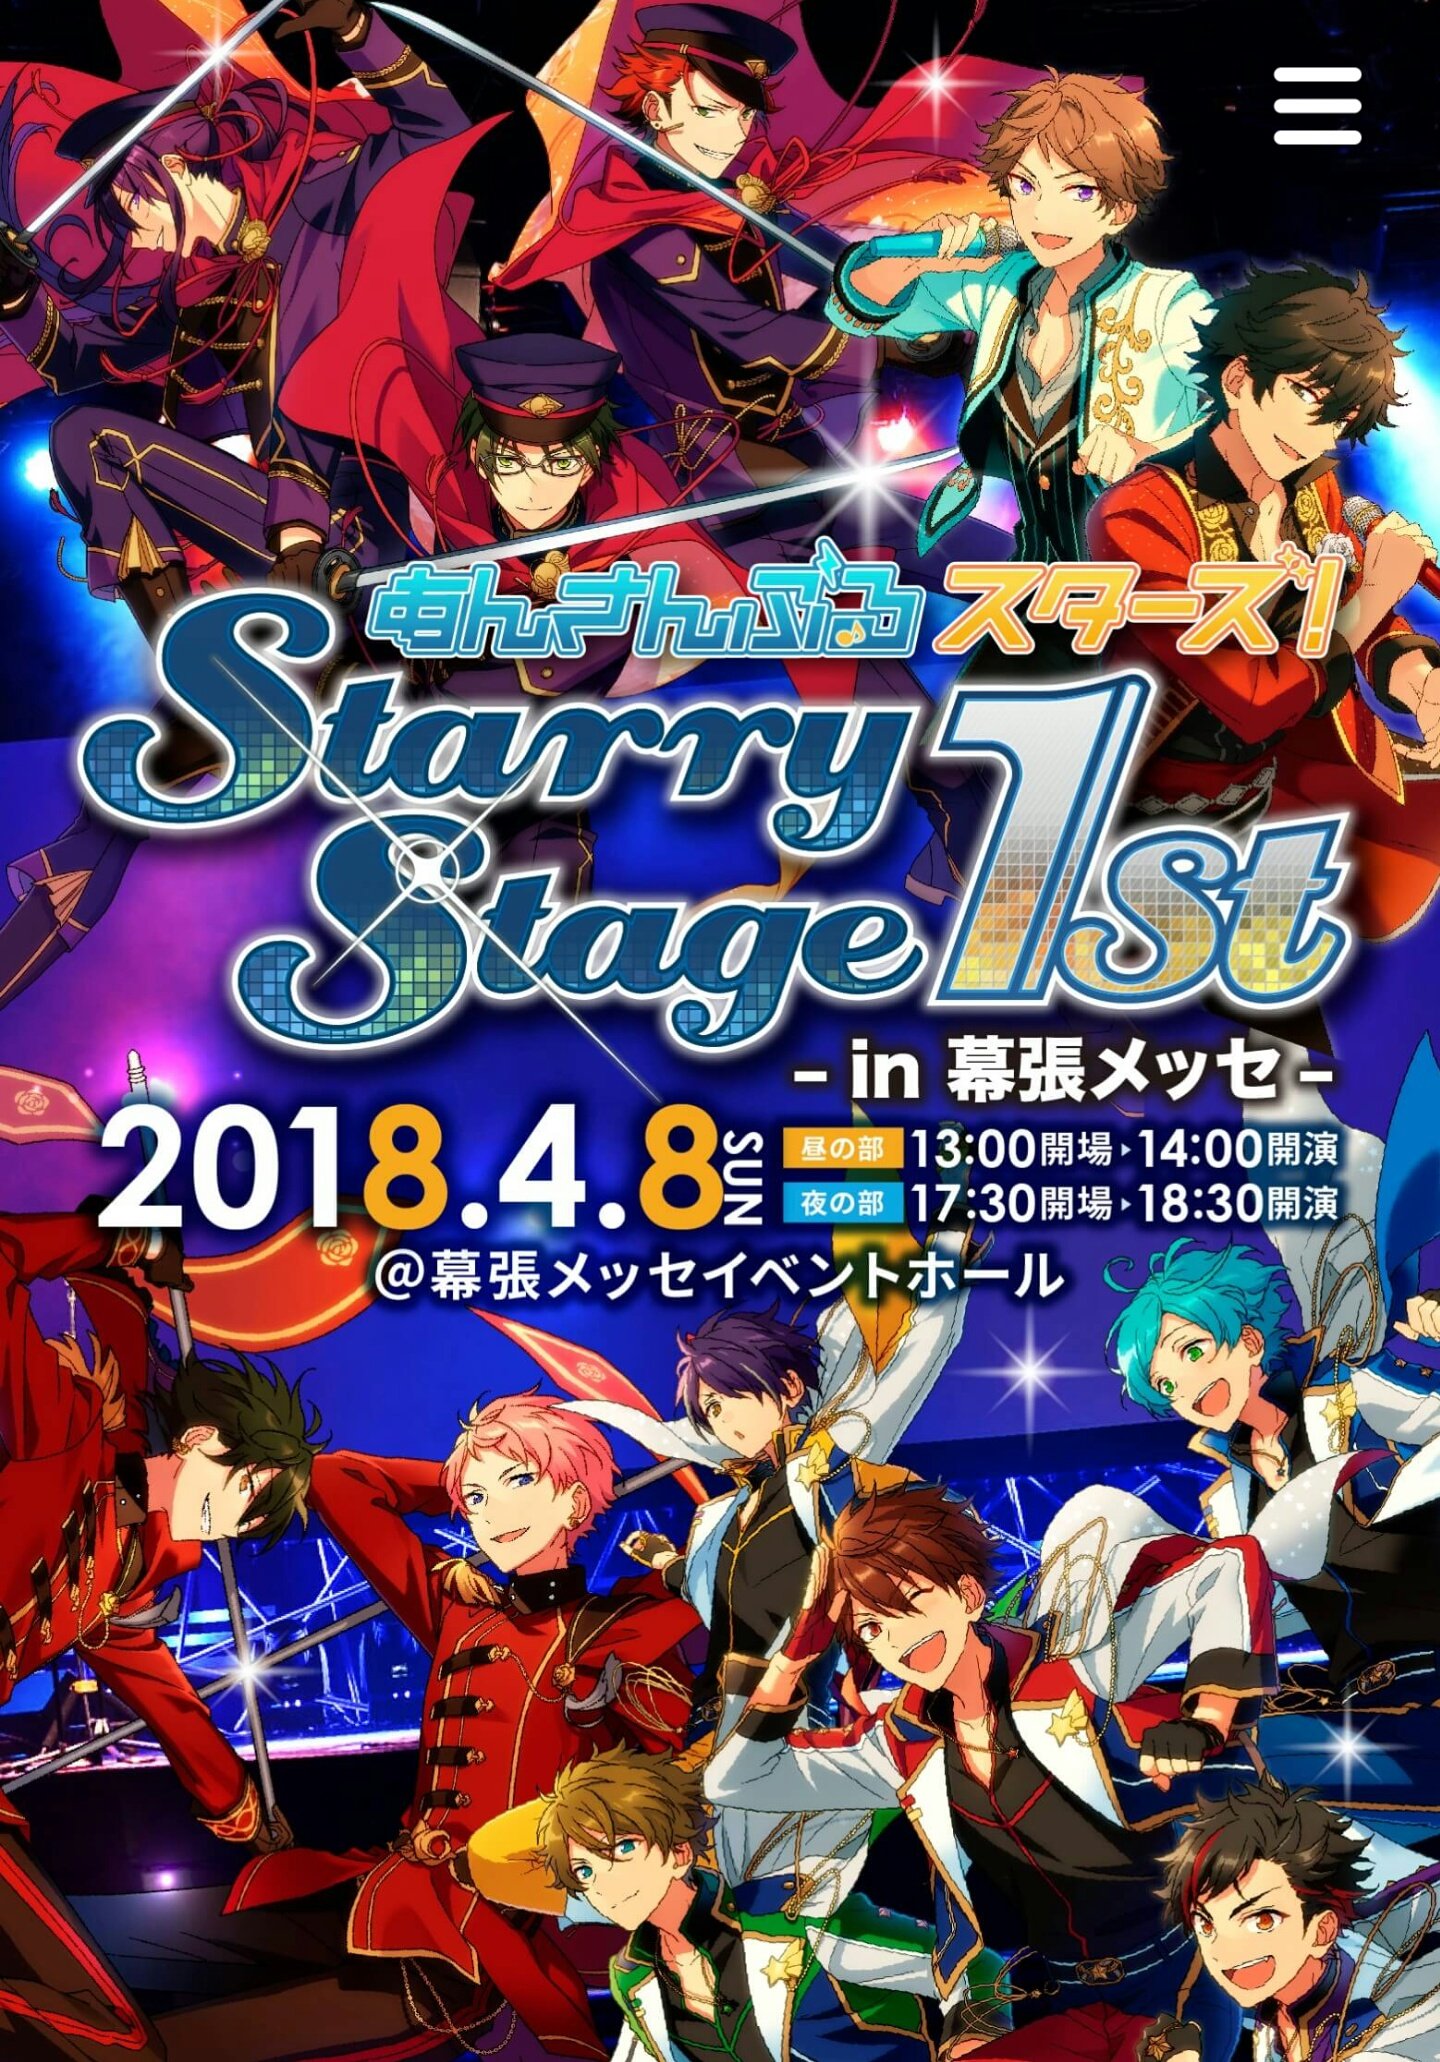 ✨あんスタ! Starry stage 1st✨ / Twitter